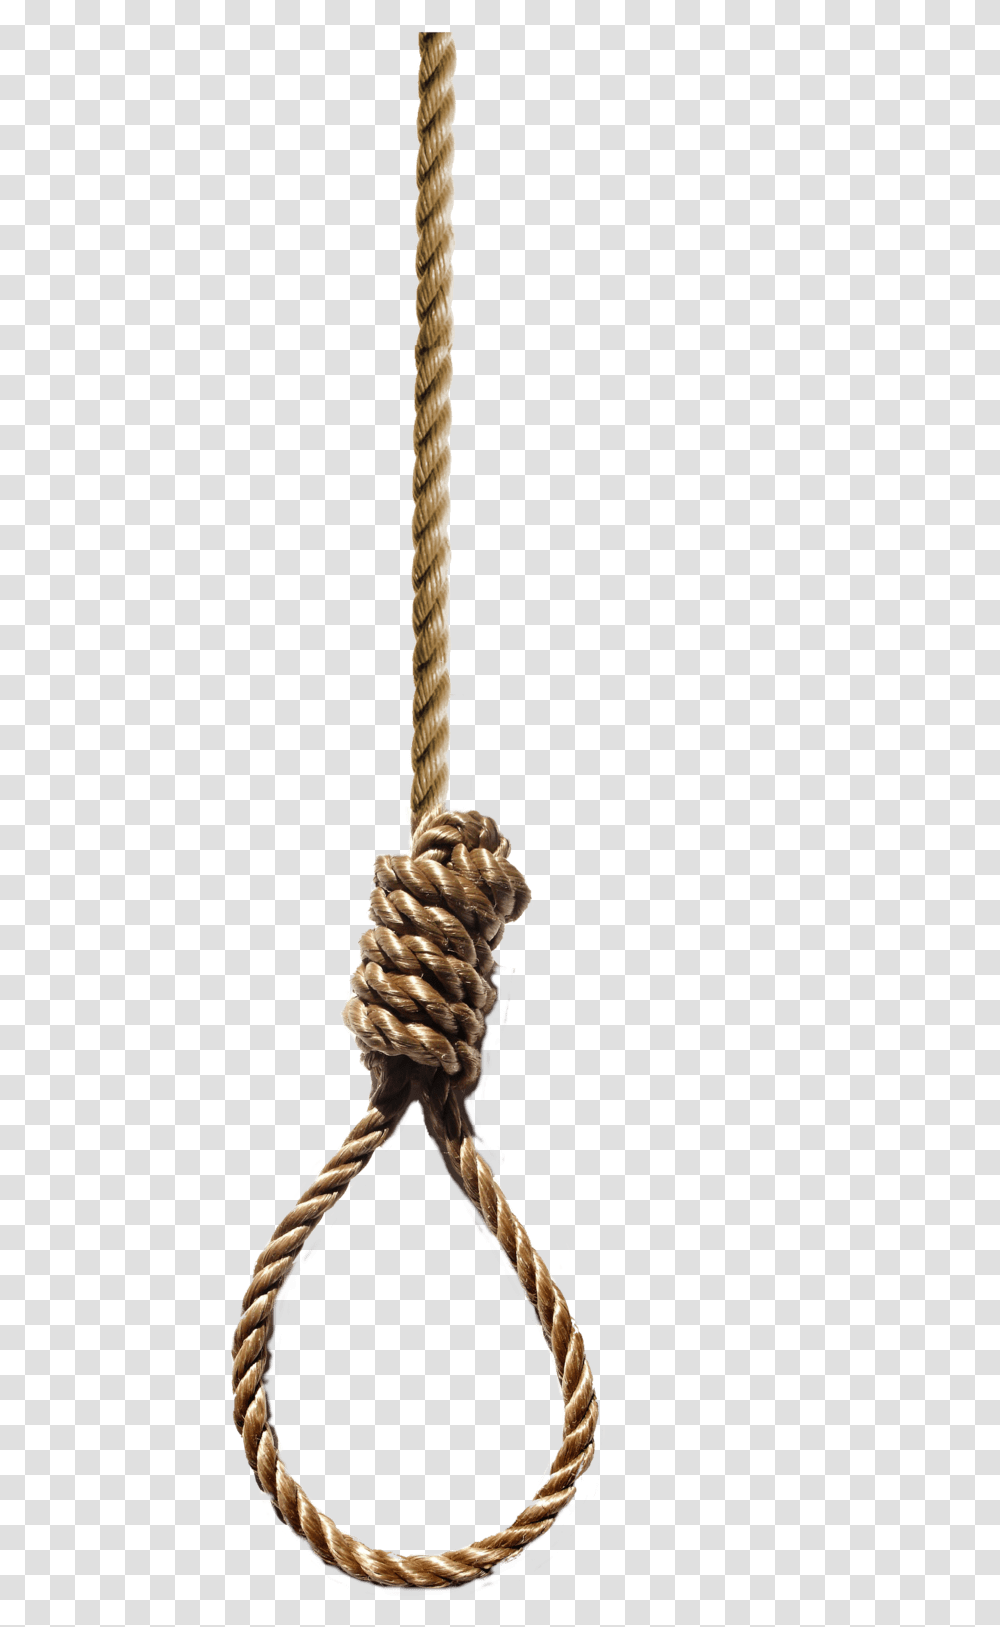 Hanging Rope Hangman's Noose, Knot Transparent Png